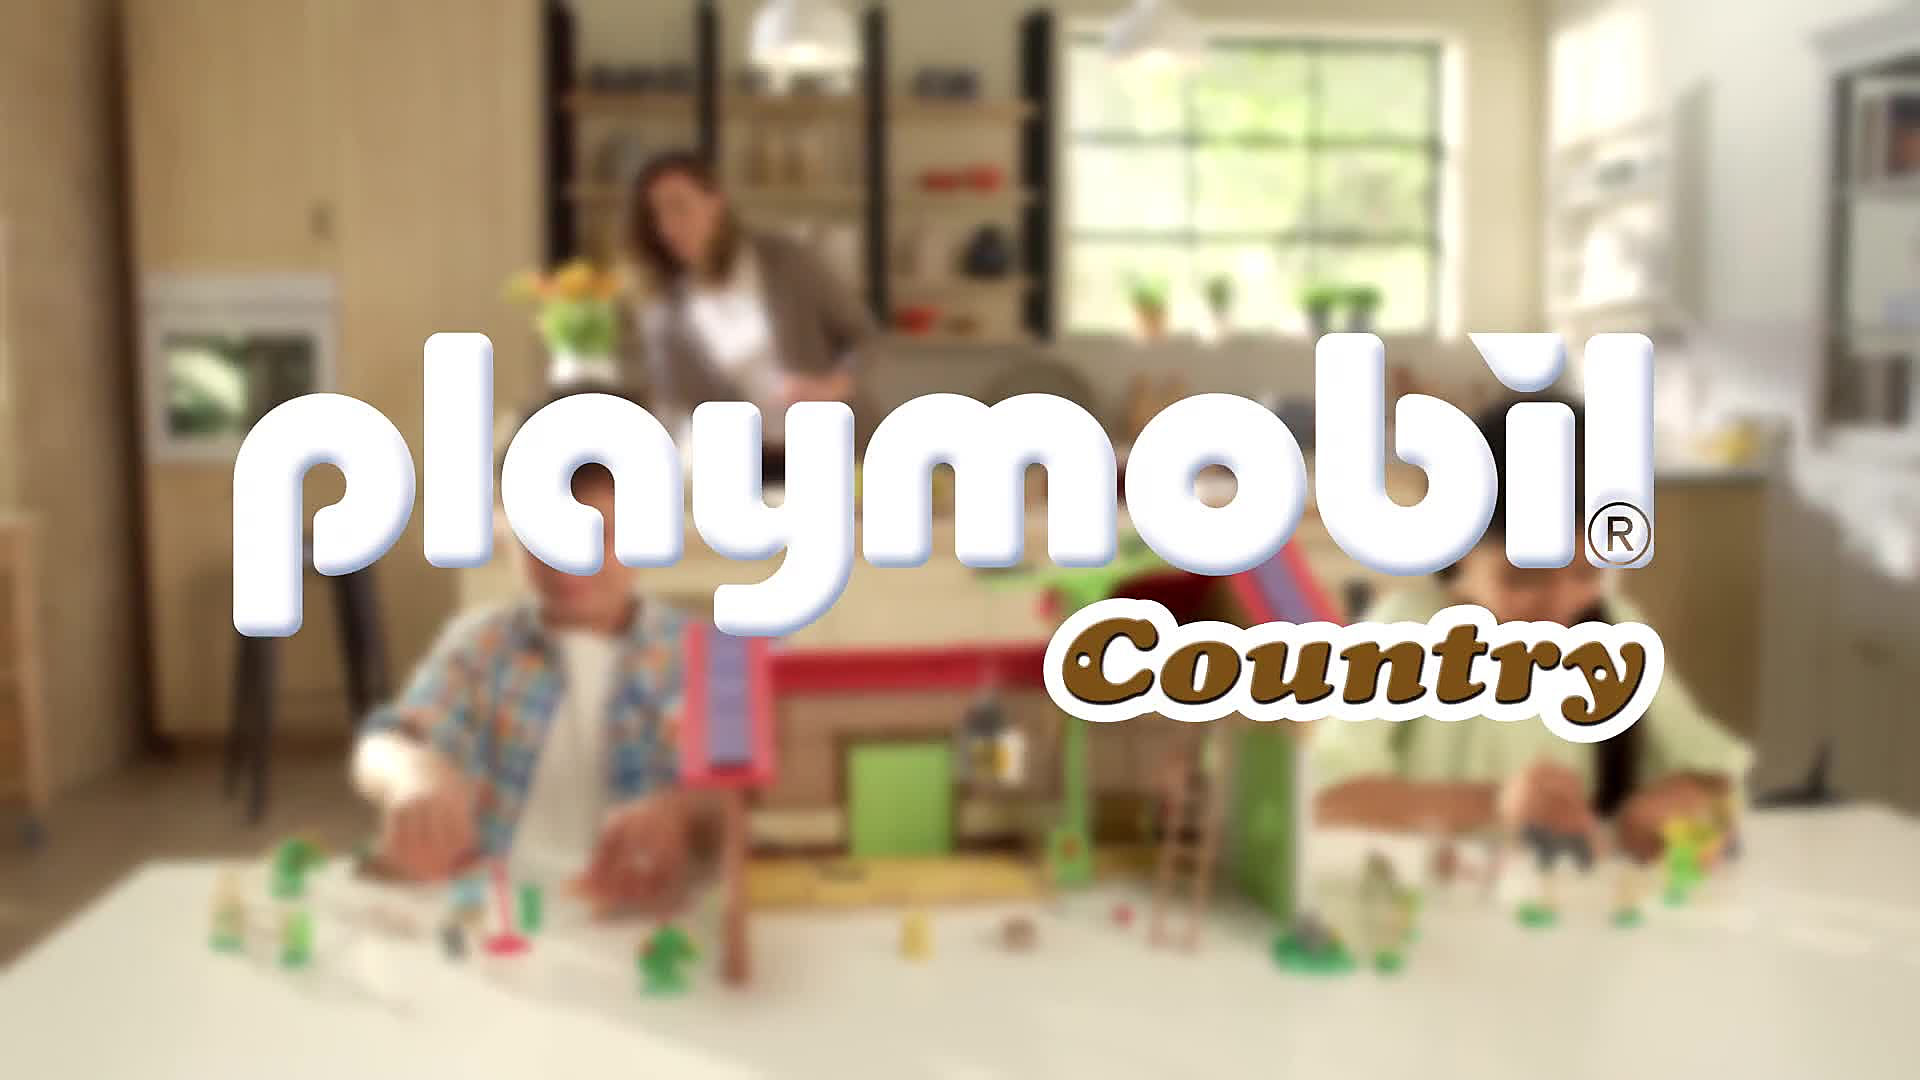 Playmobil Country 71309 Famille de chats avec femme et enfant